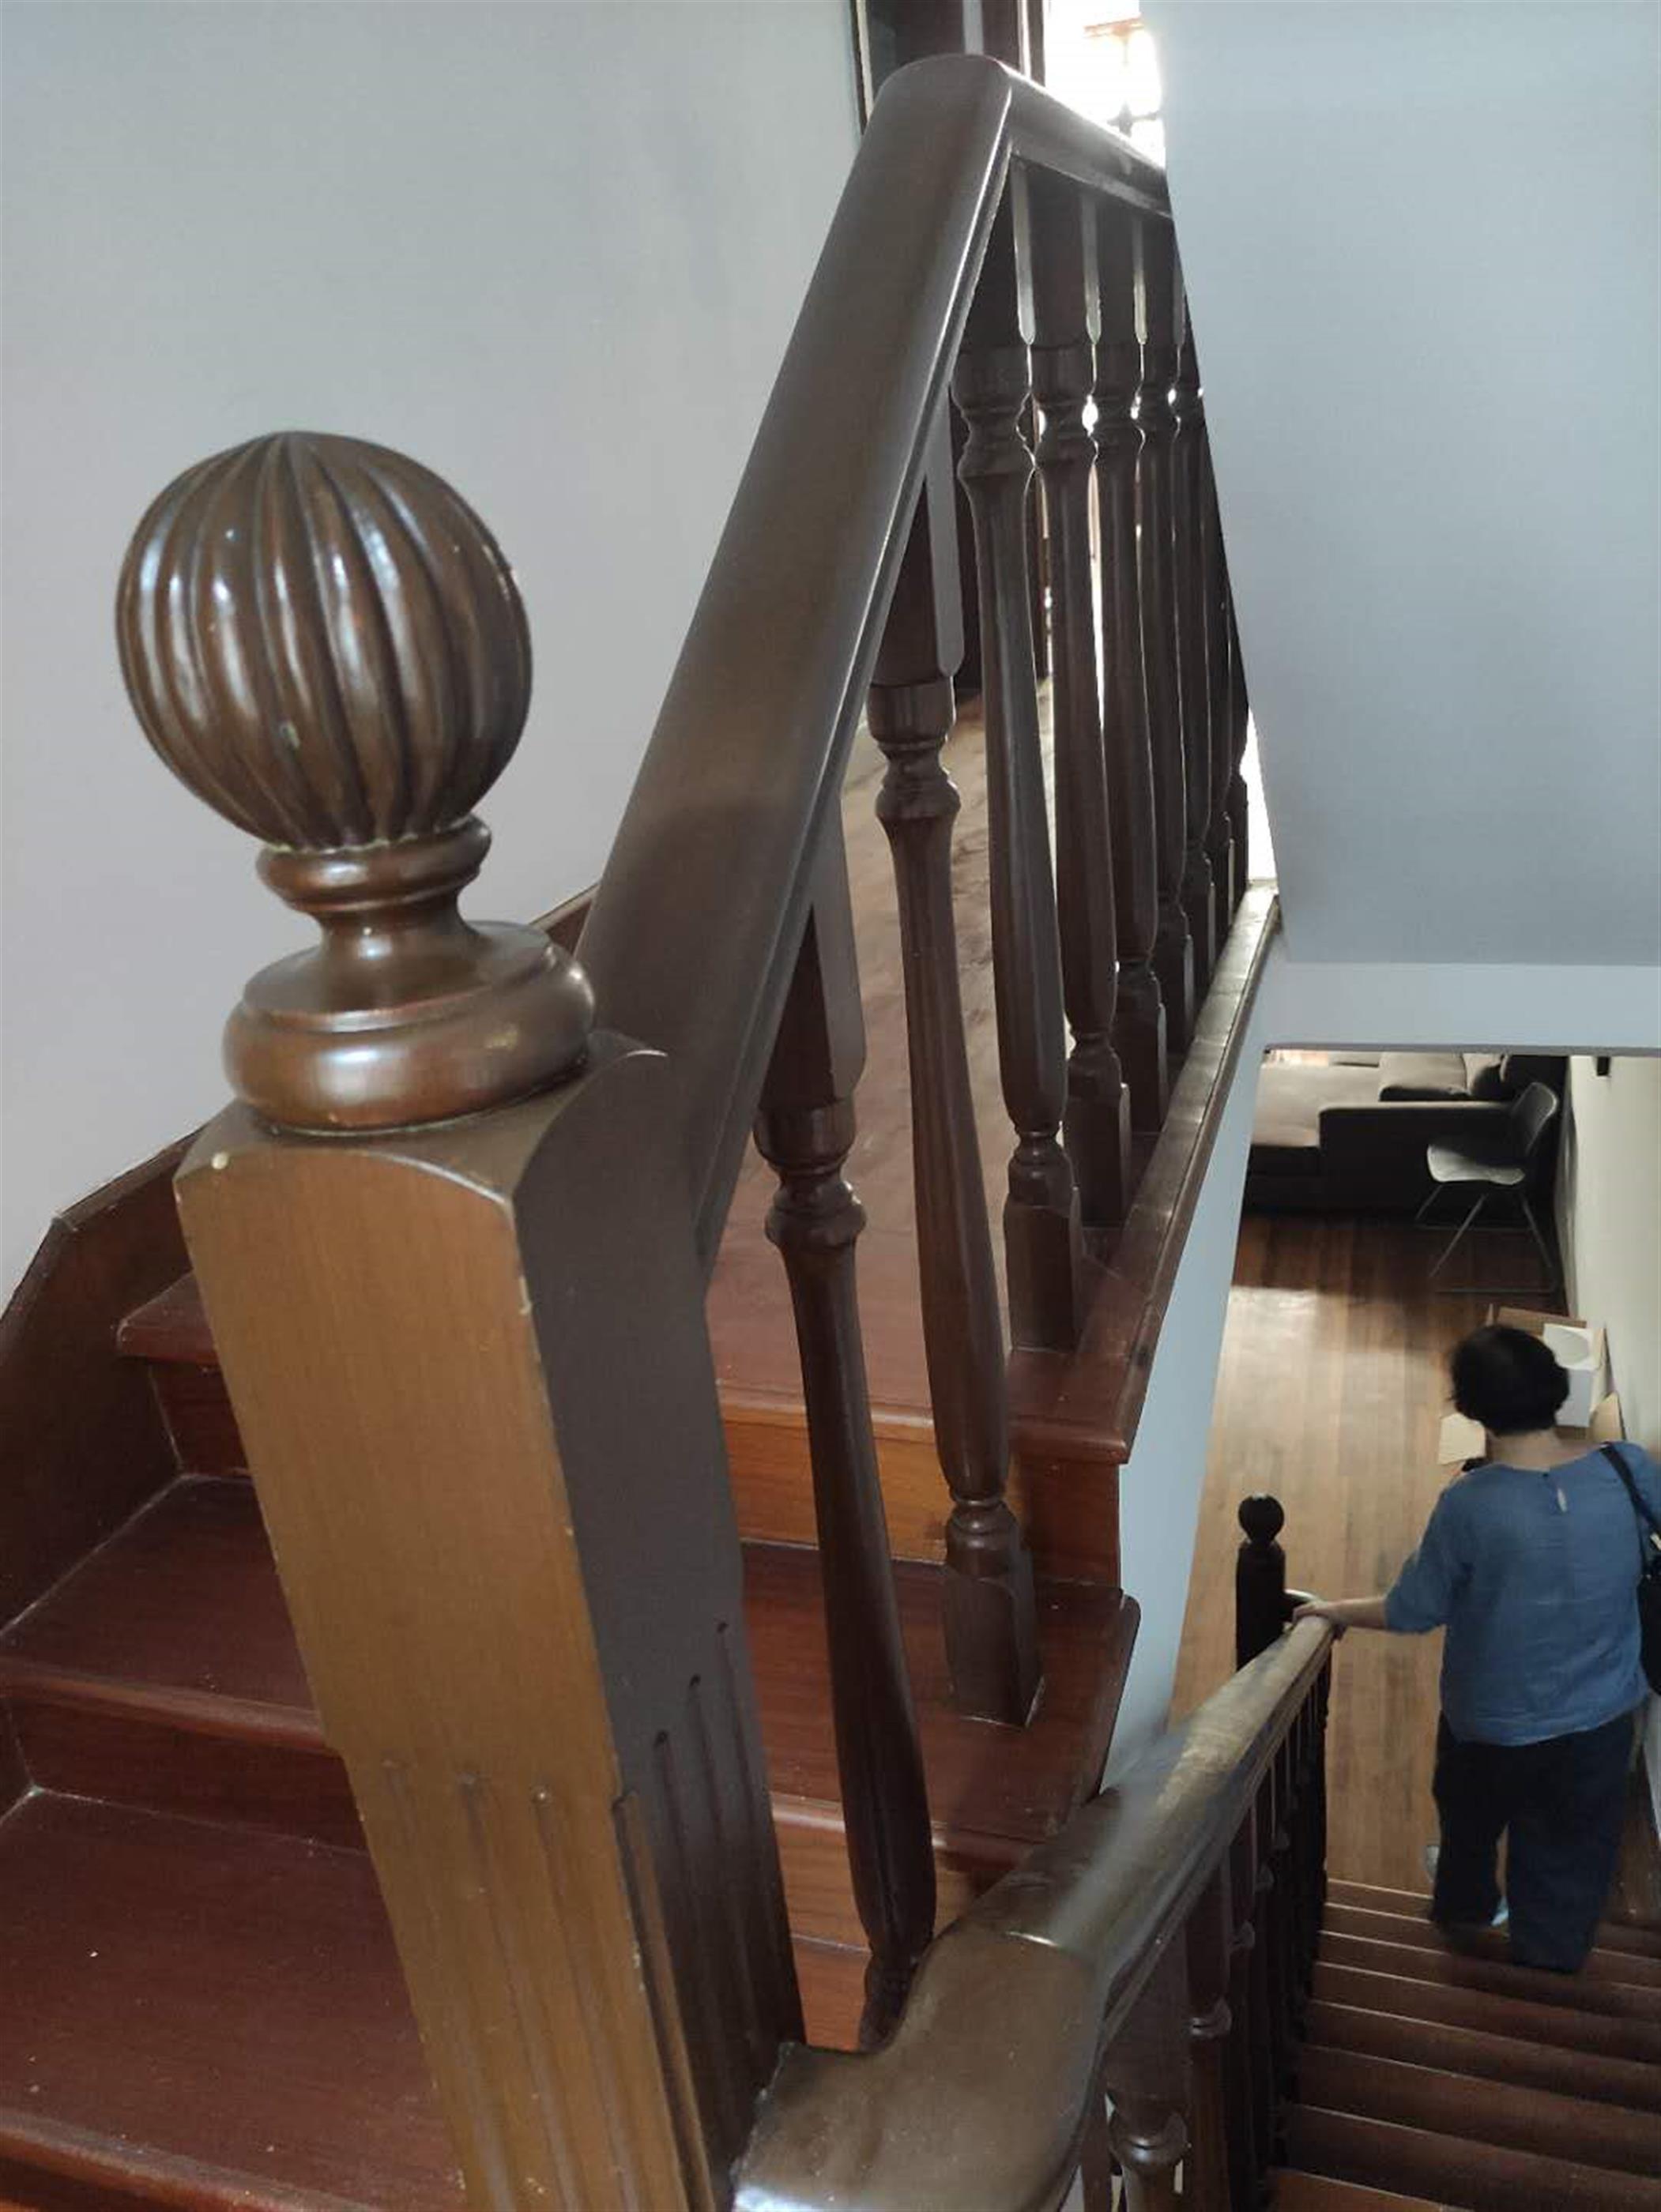 Stairway 3-Floor 3BR Lane House Nr Ln 2/12/13 for Rent in Shanghai